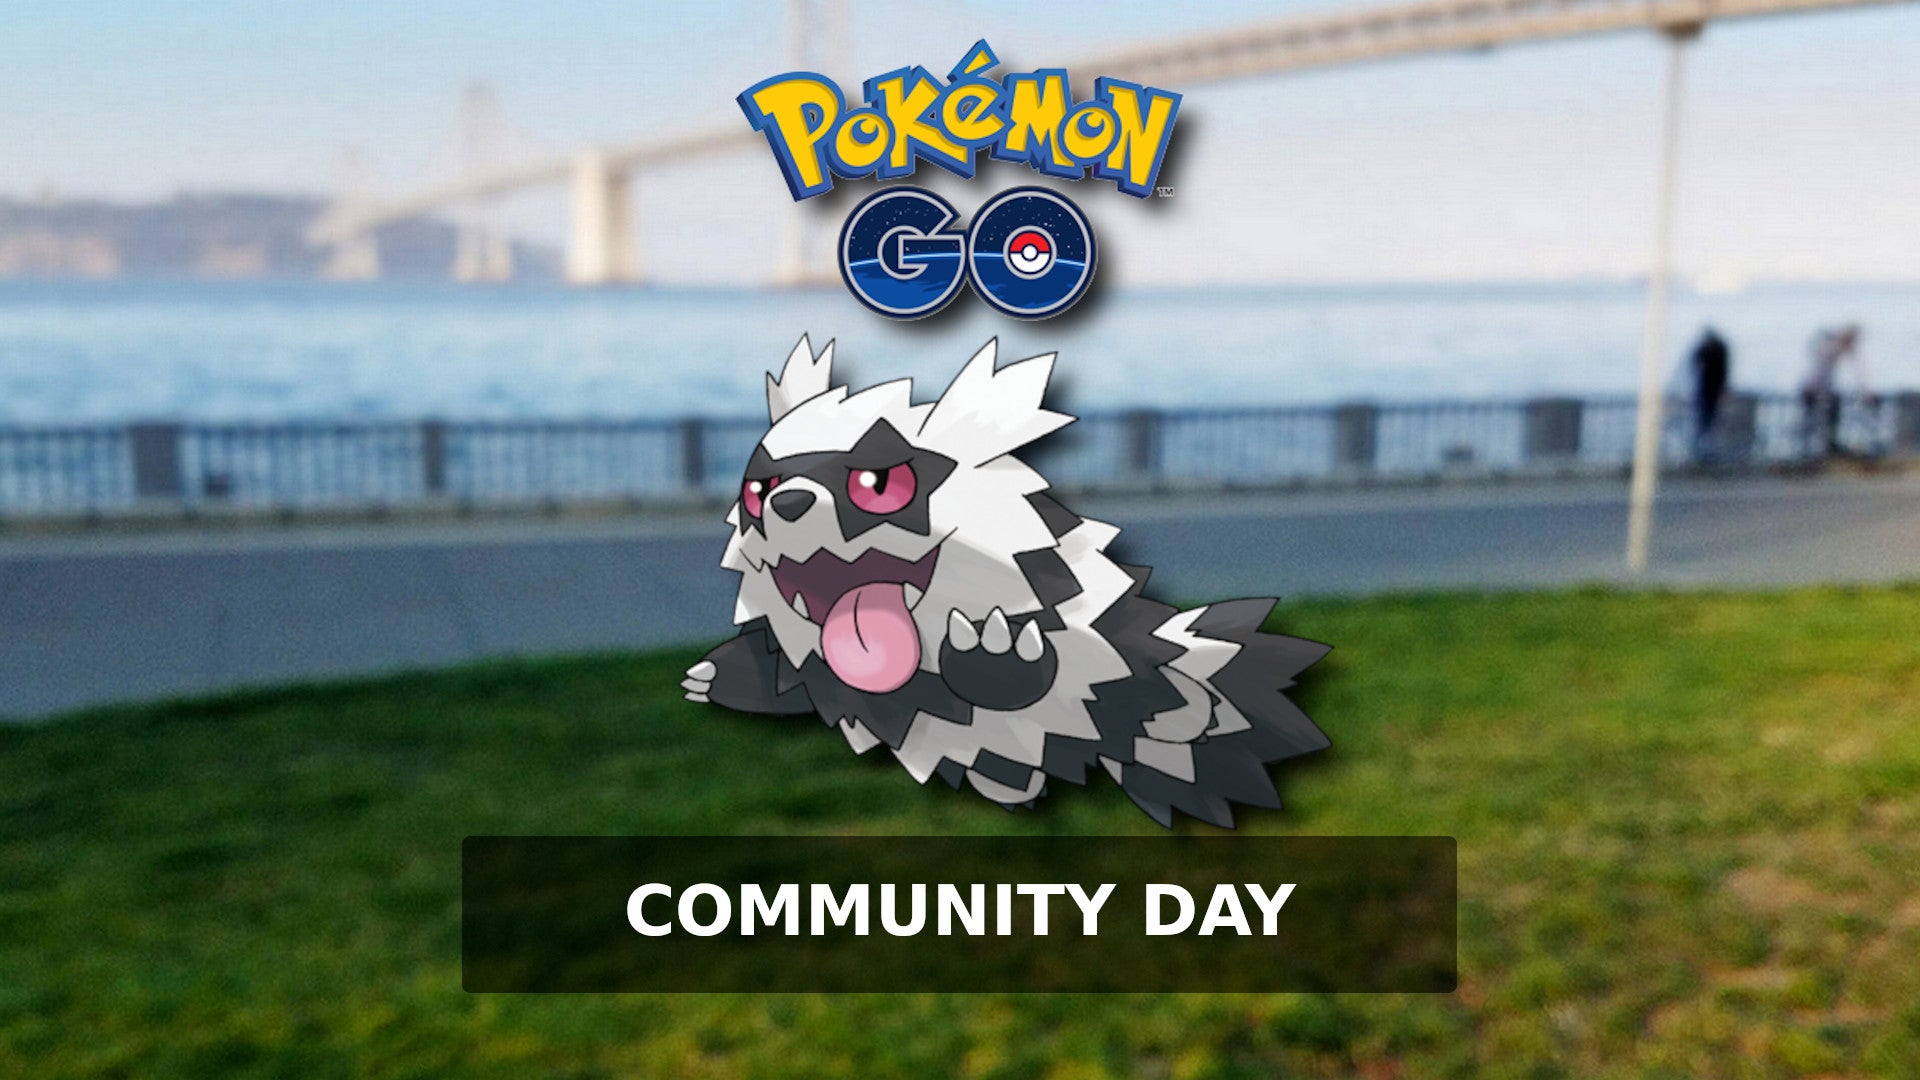 Bilder zu Pokémon Go: Community Day heute mit Galar-Zigzachs - Alle Infos zu Event und Boni